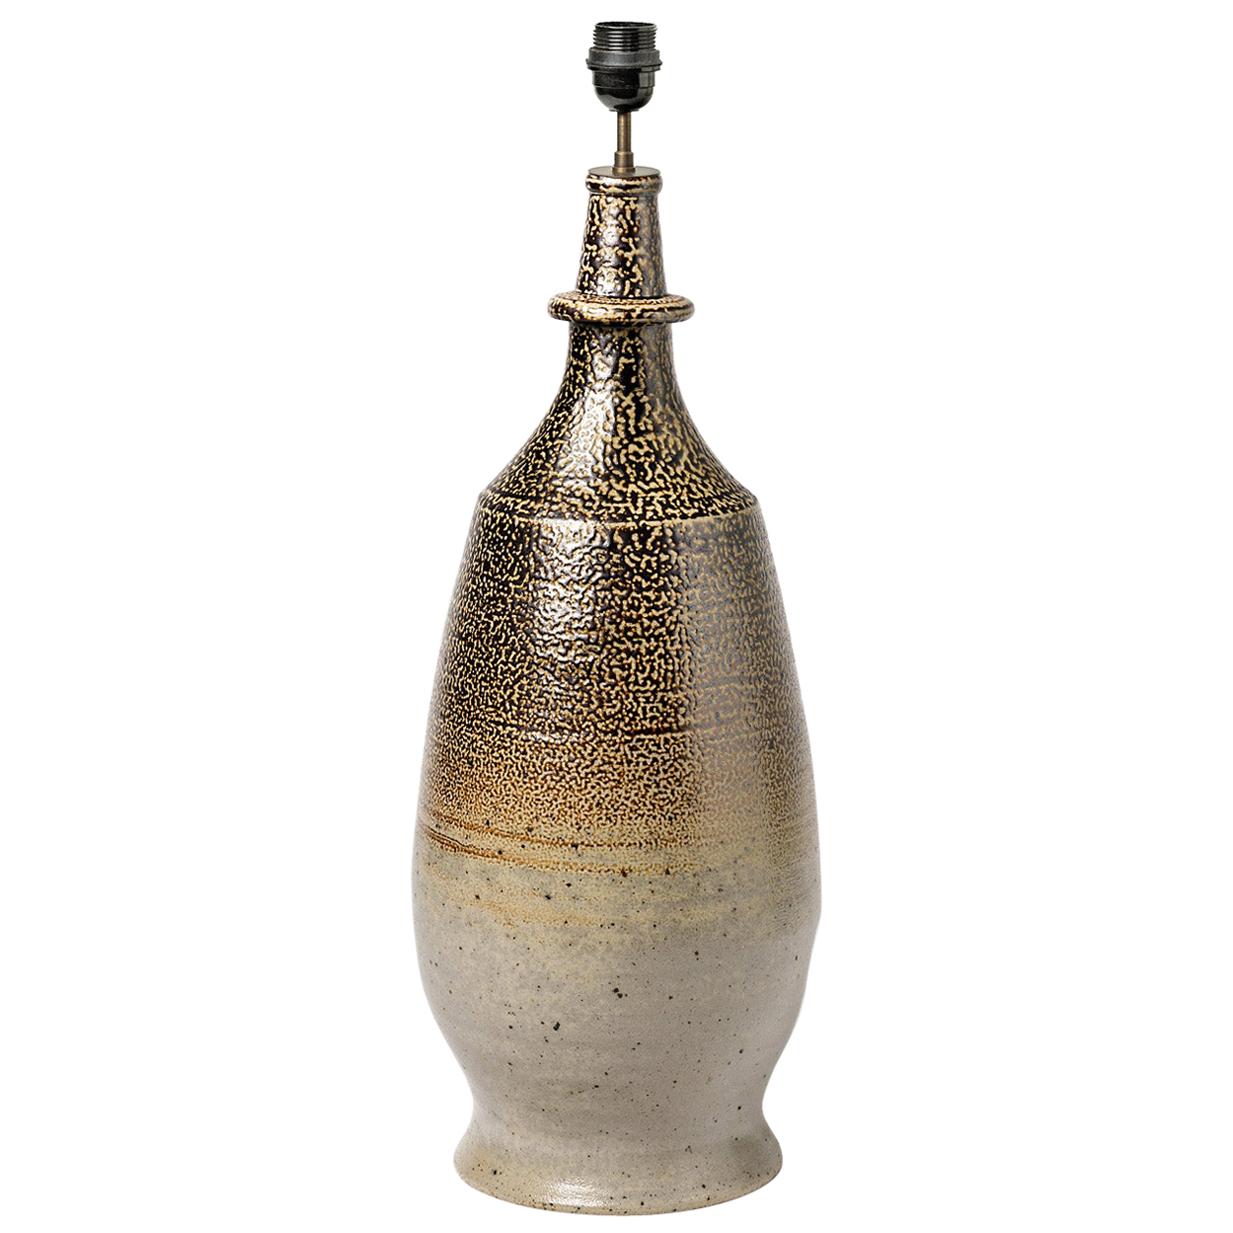 Ceramic Lamp, by the Potters of La Borne, circa 1960-1970